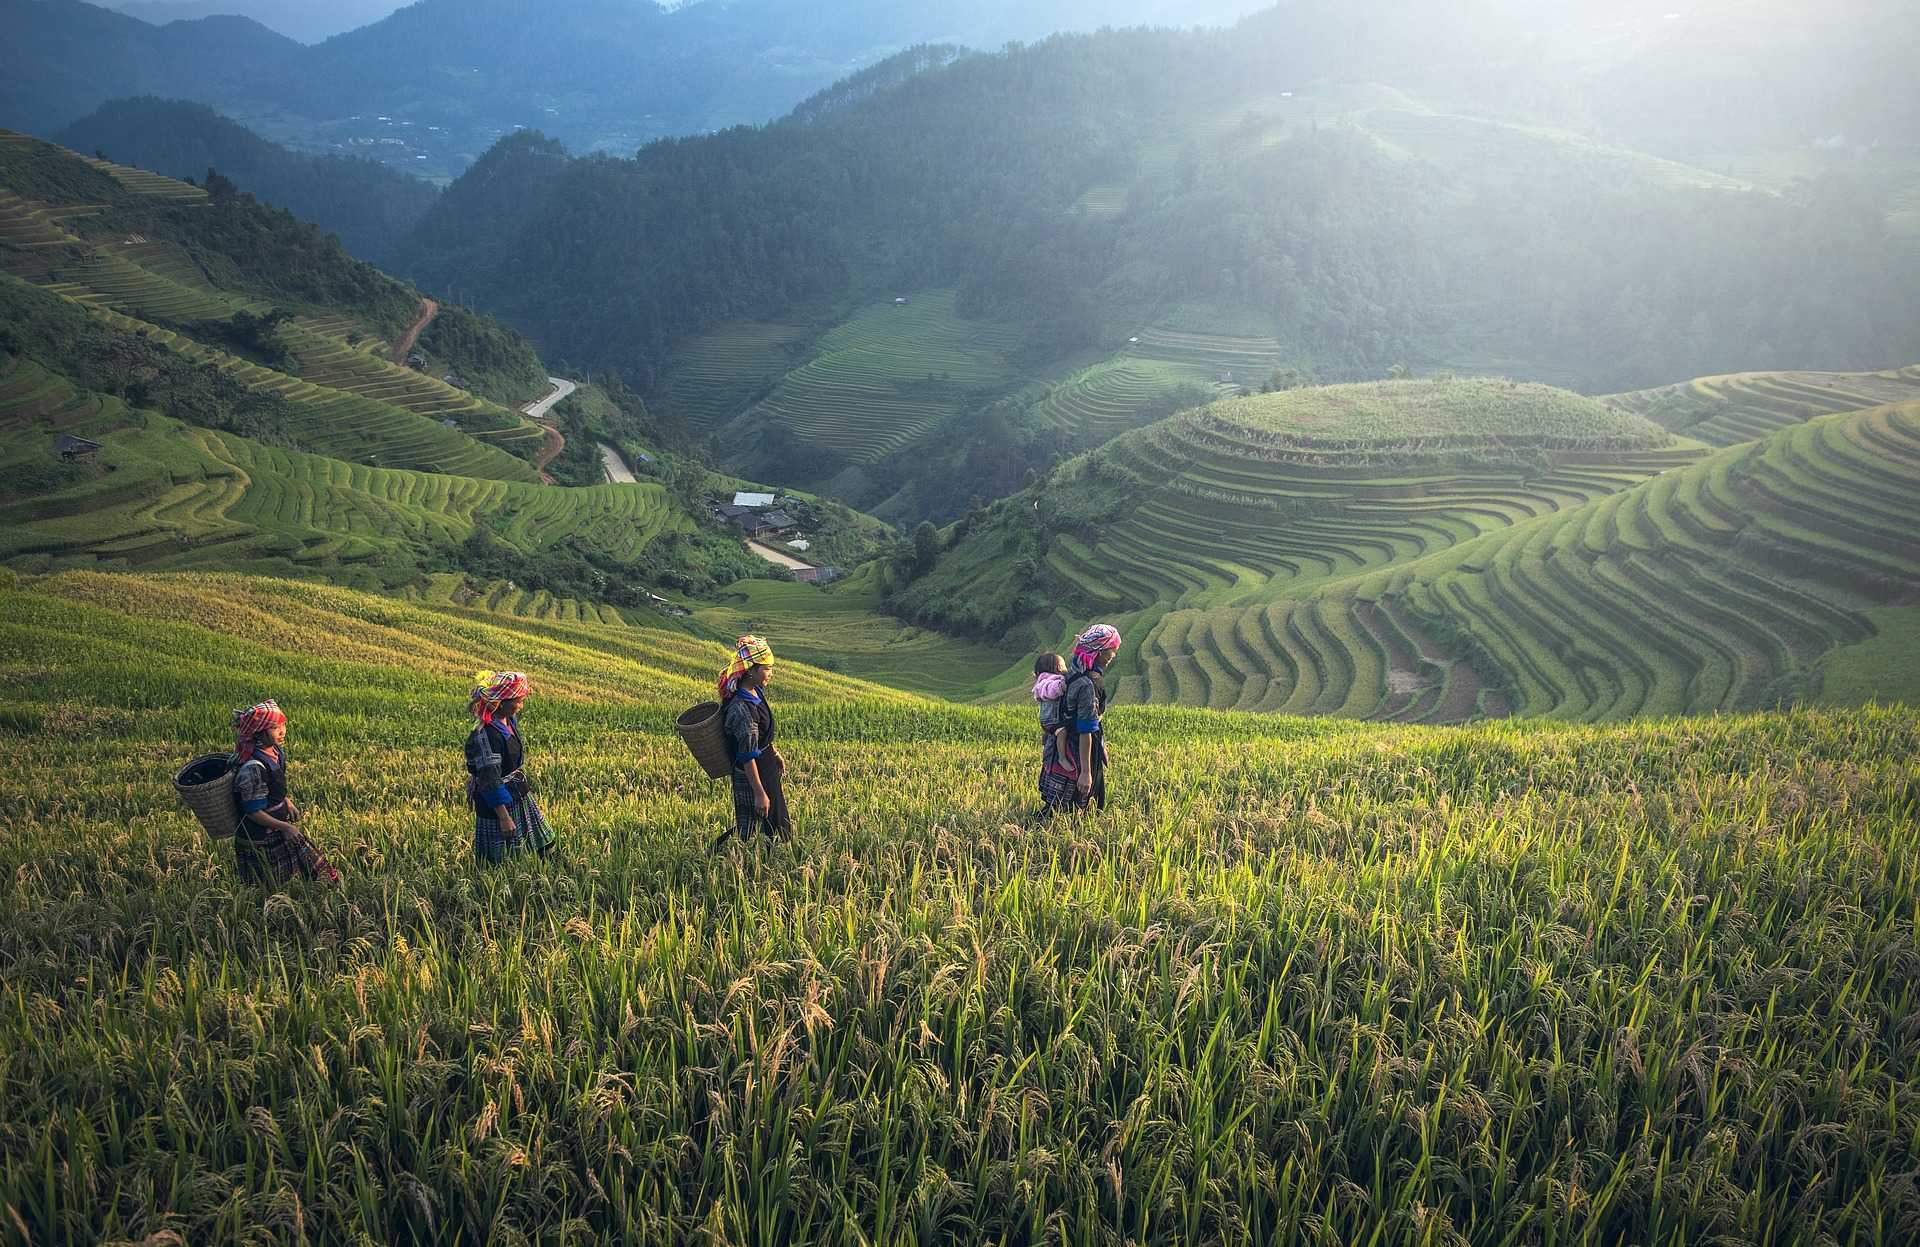 Femmes des minorités ethniques dans les rizières au Vietnam